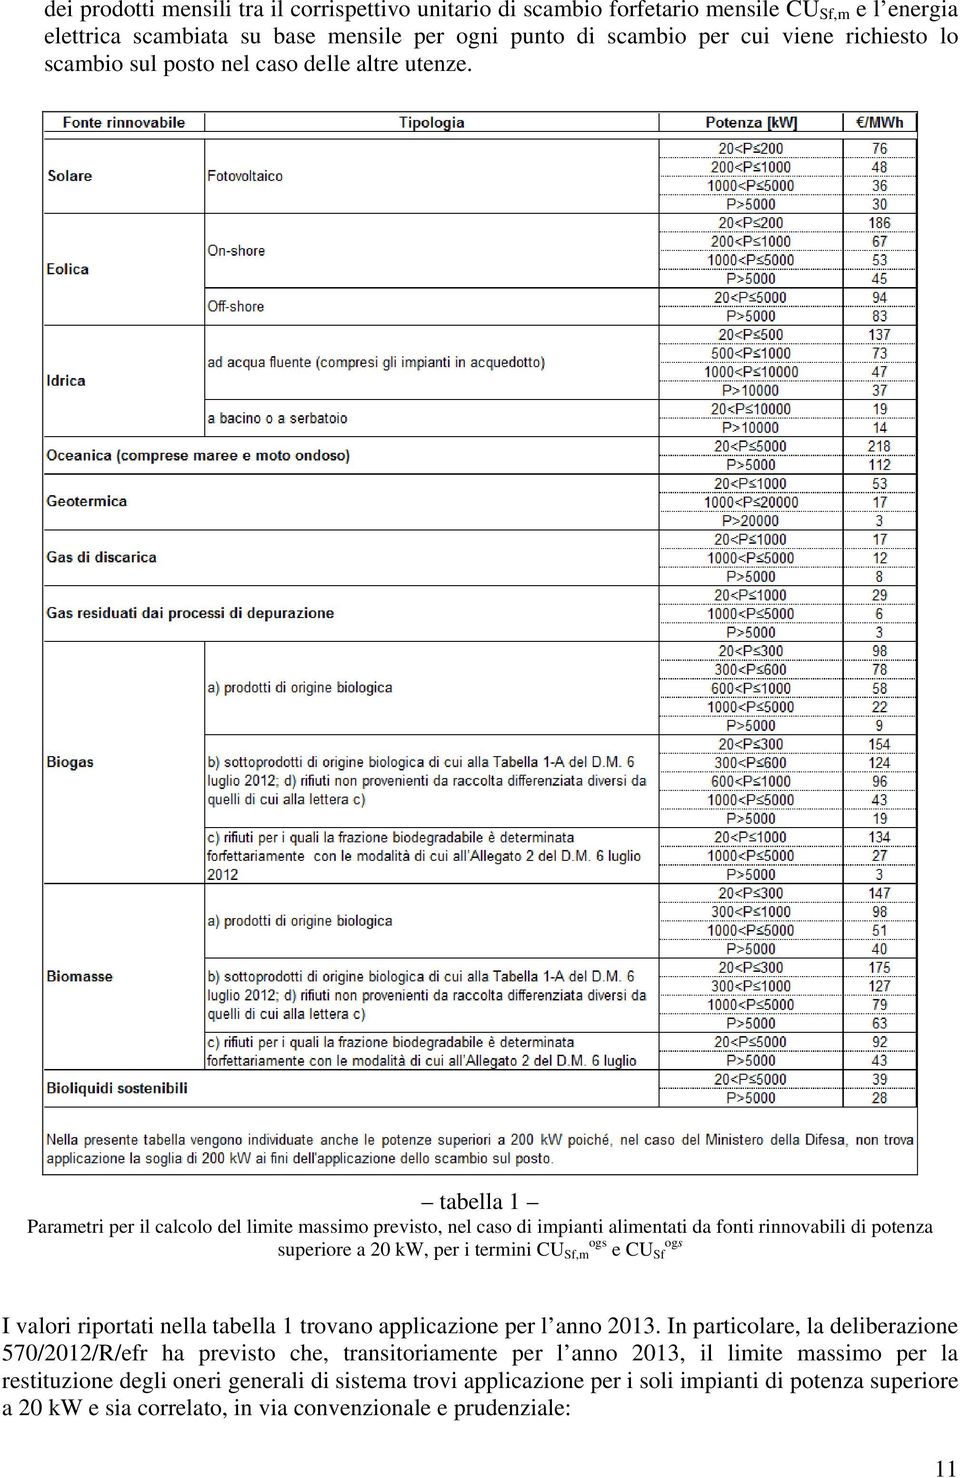 tabella 1 Parametri per il calcolo del limite massimo previsto, nel caso di impianti alimentati da fonti rinnovabili di potenza superiore a 20 kw, per i termini CU Sf,m ogs e CU Sf ogs I valori